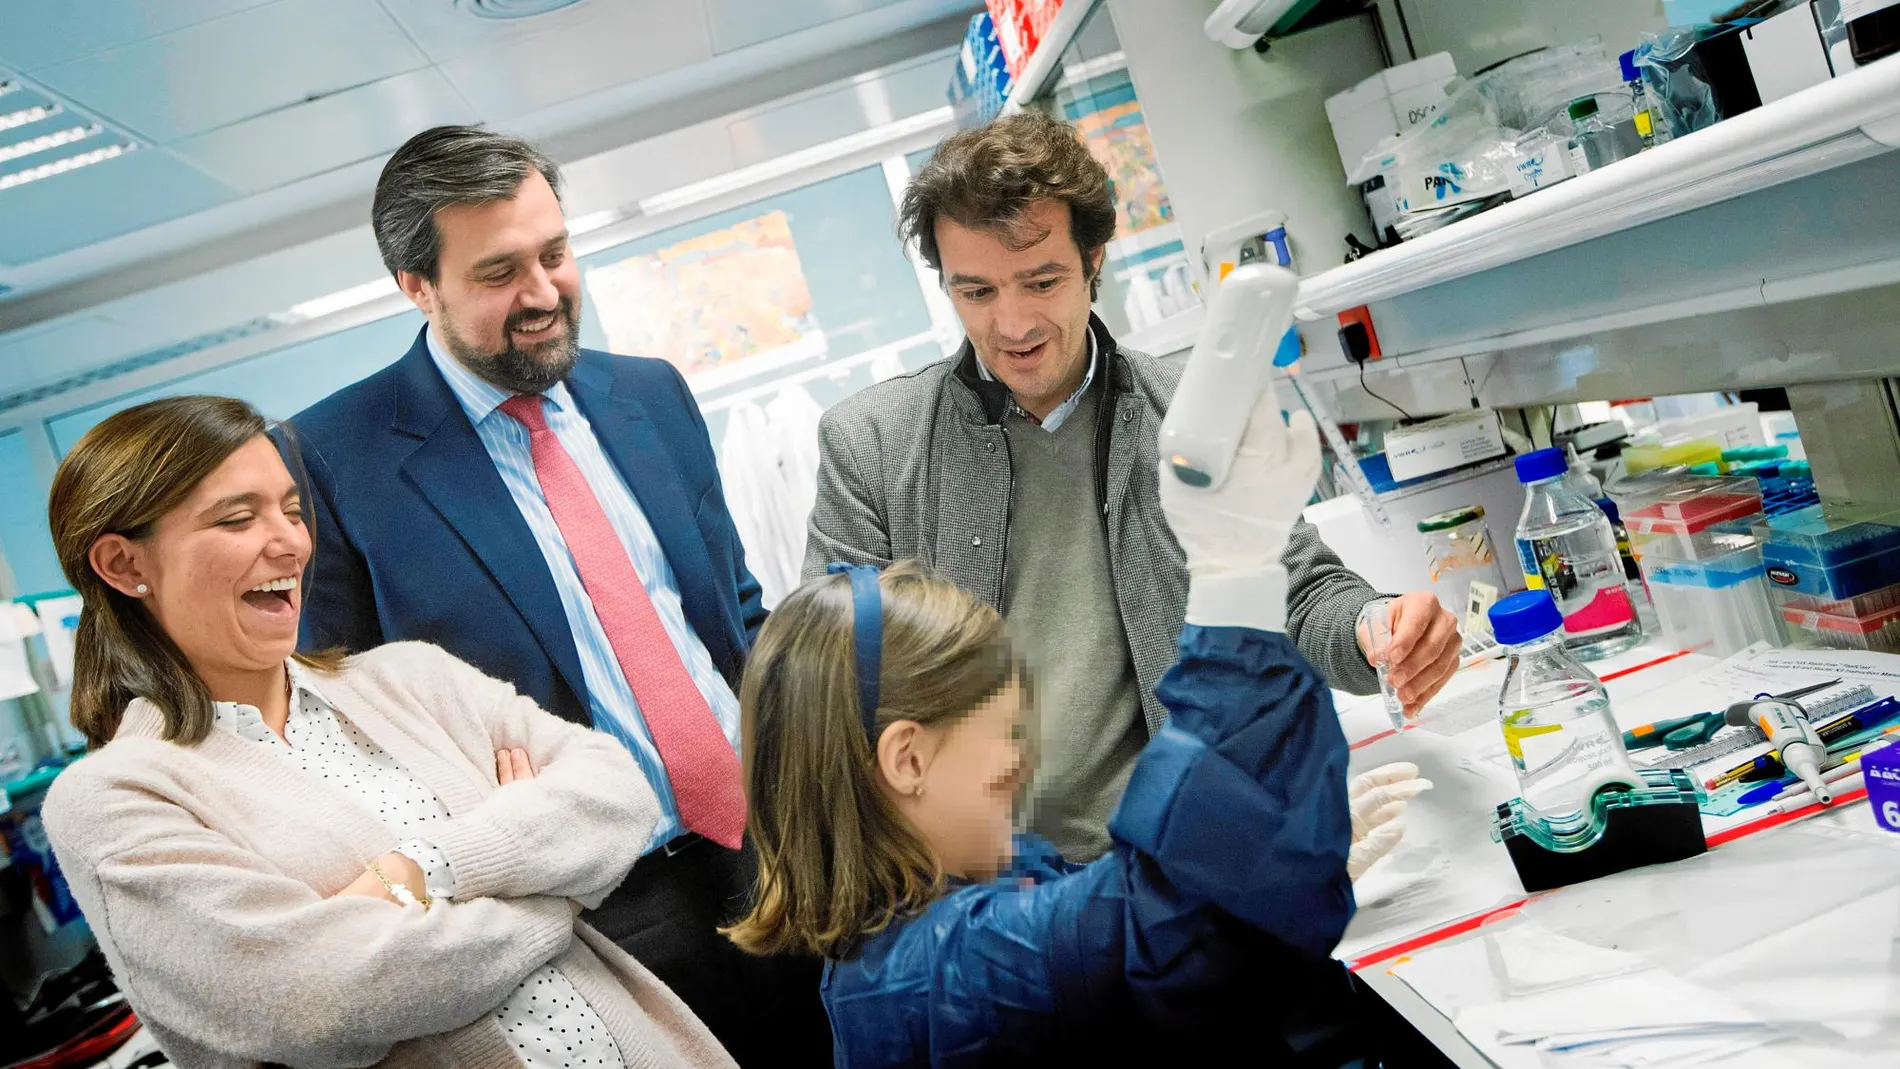 Inés y sus padres, María y Ricardo, visitan el laboratorio del Instituto Josep Carreras del equipo del doctor Pablo Menéndez. Foto: Marta Pérez/Efe